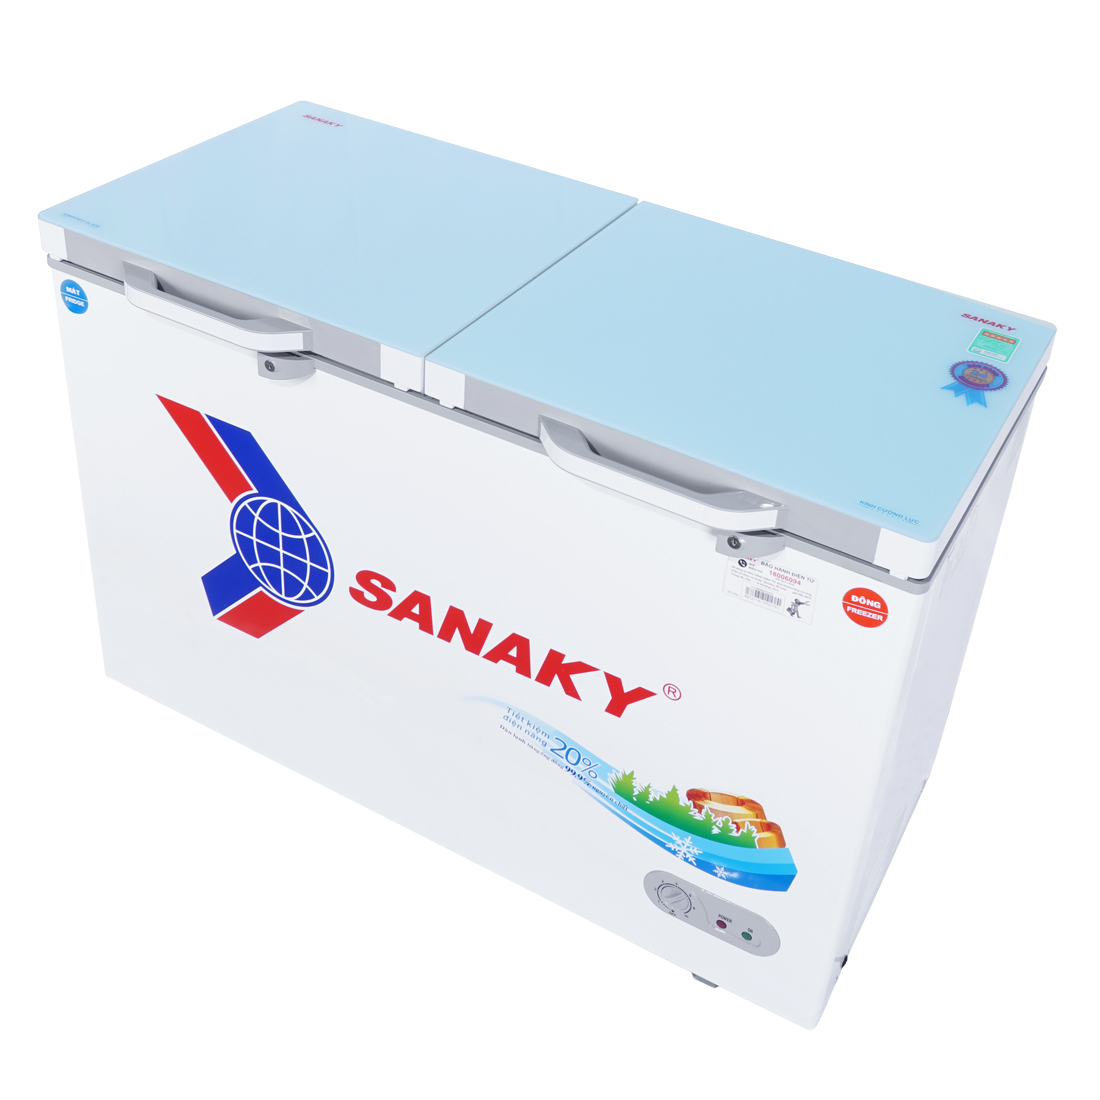 Tủ Đông Sanaky VH-4099W2KD